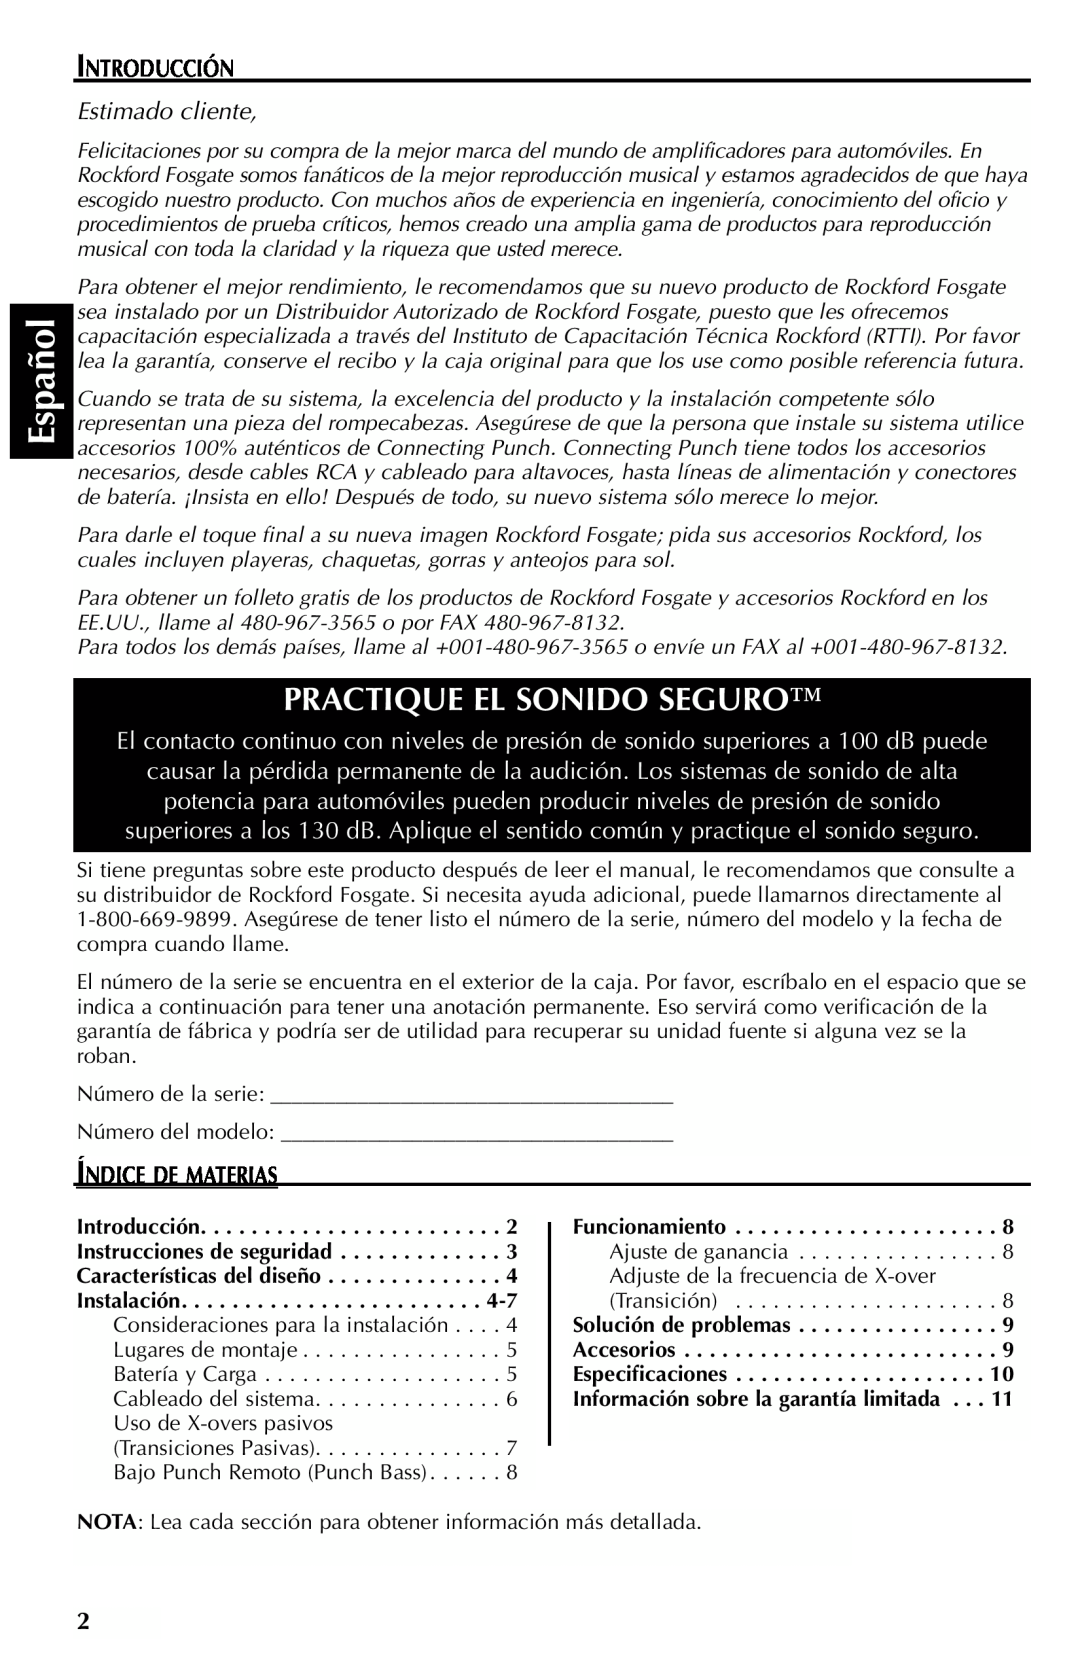 Rockford Fosgate 351M manual Español, Practique El Sonido Seguro, Introducción, Estimado cliente, Índice De Materias 